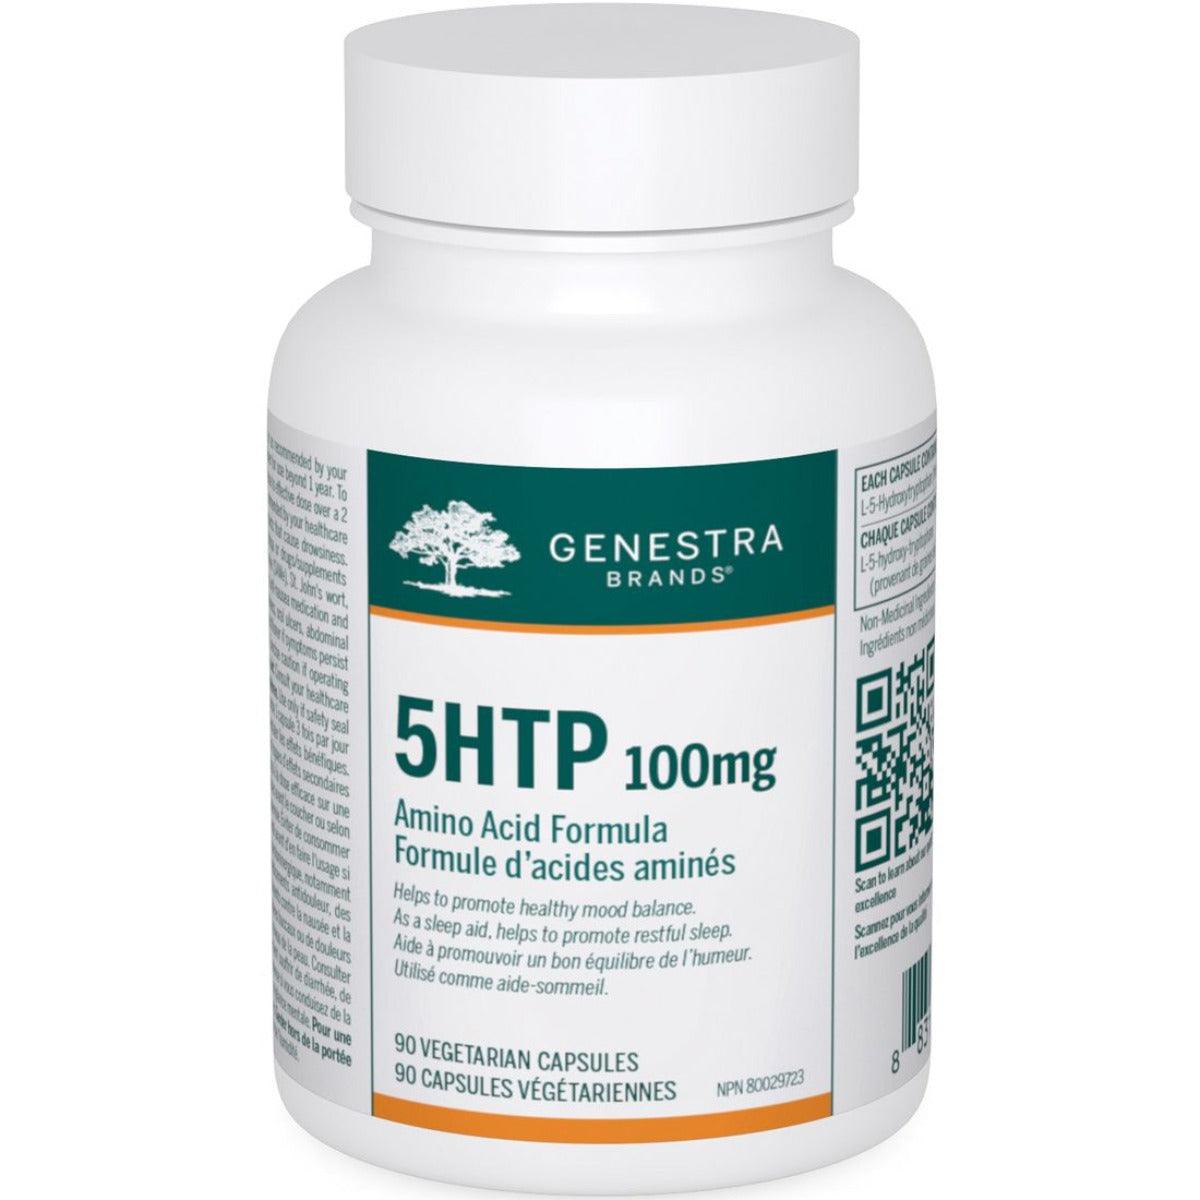 Genestra 5HTP 100mg 90 Caps Supplements - Amino Acids at Village Vitamin Store